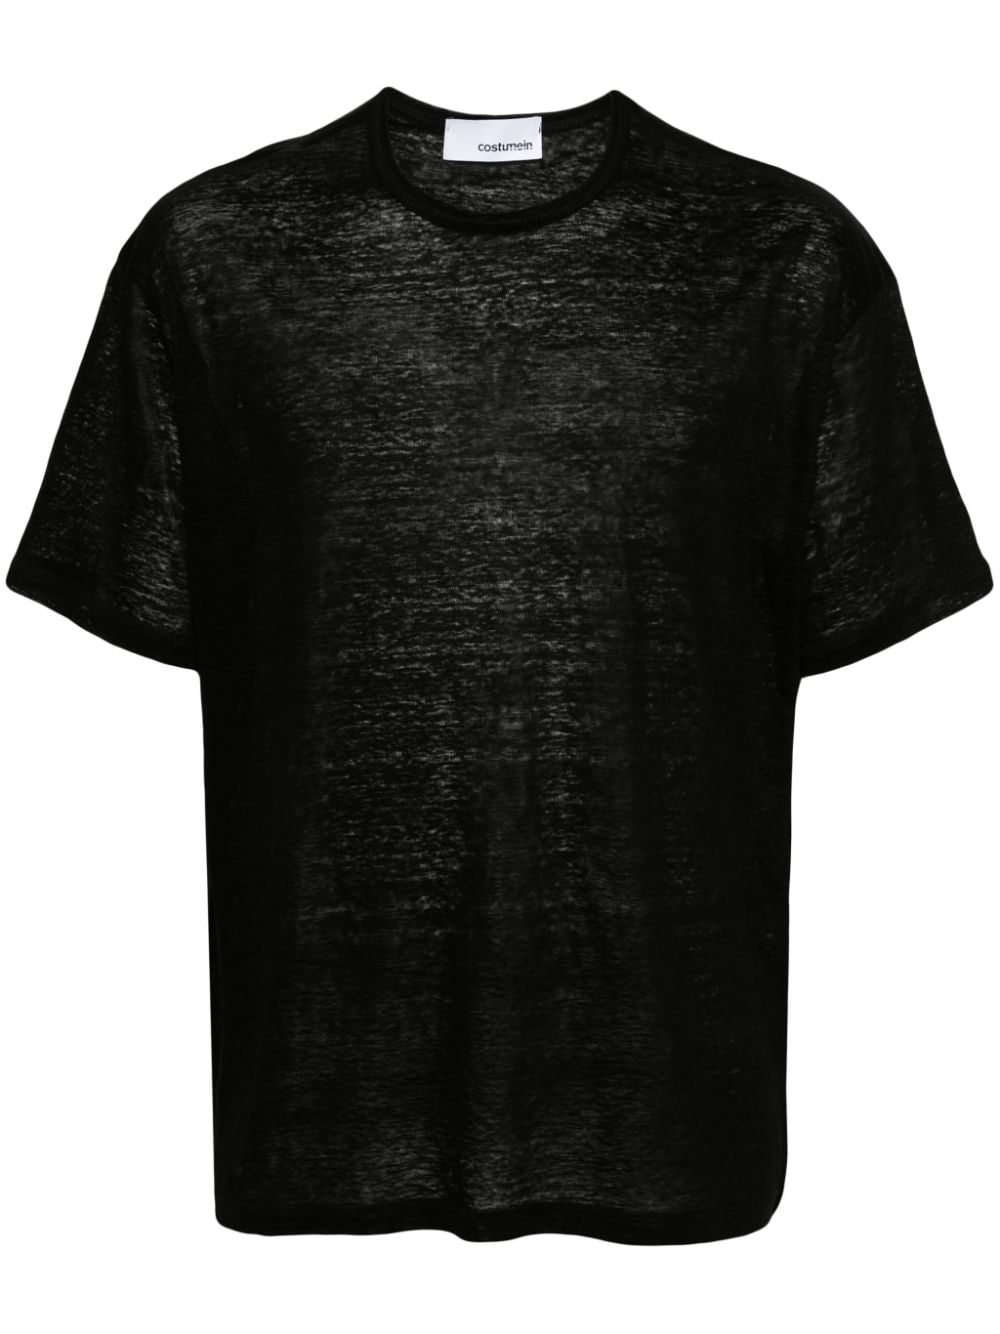 Costumein short-sleeve cotton T-shirt - Black von Costumein